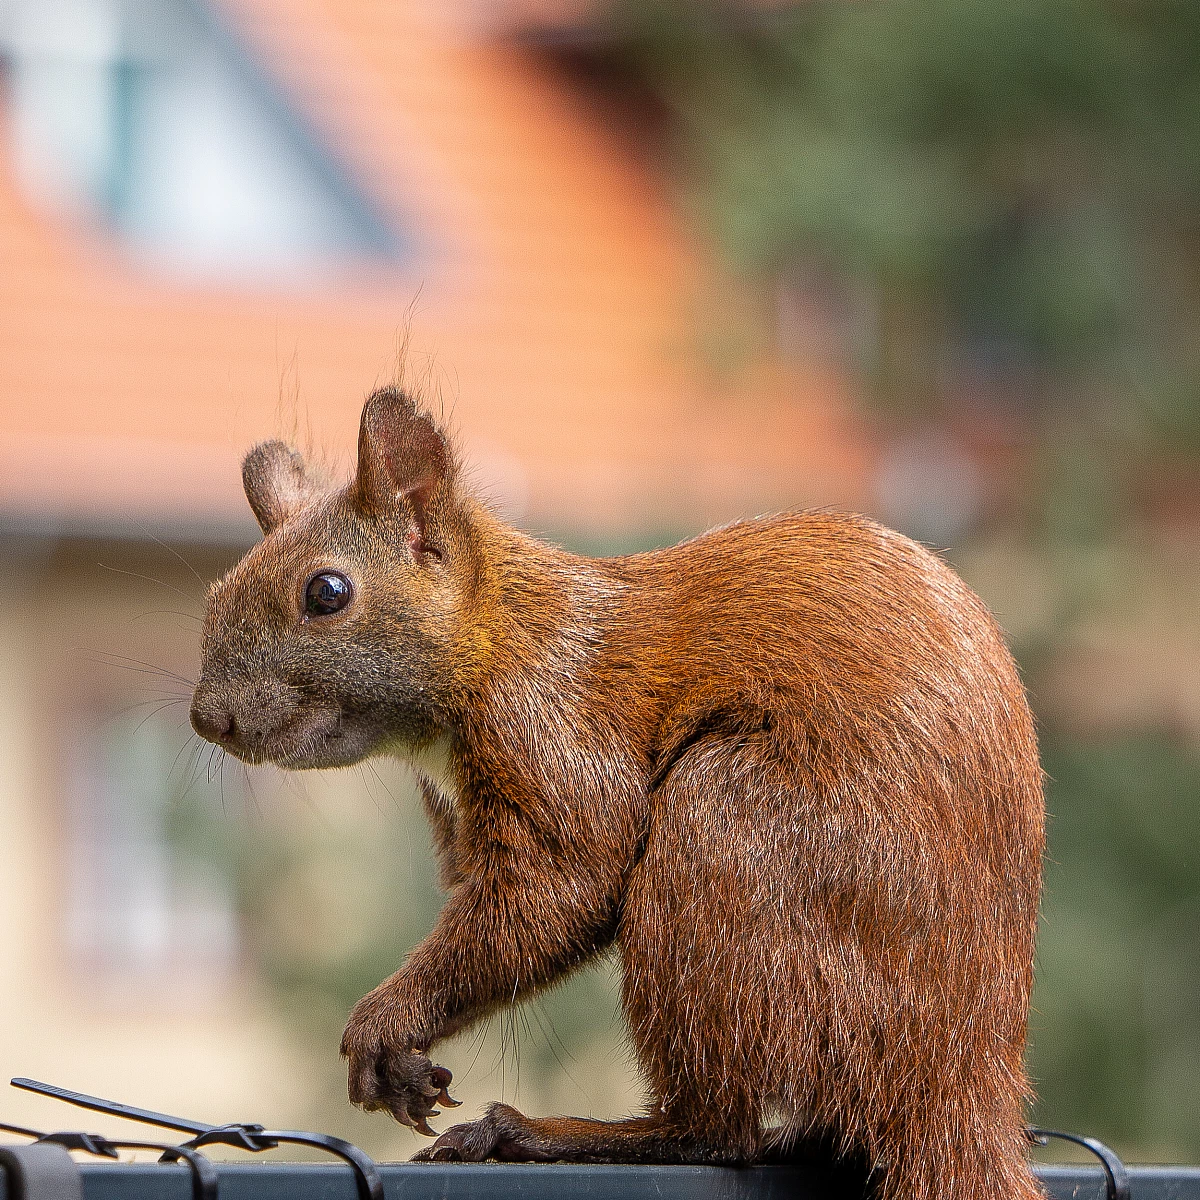 Ein Eichhörnchen mit buschigem Schwanz sitzt auf einem Kabel und schaut zur Seite. Der Hintergrund ist unscharf und zeigt ein Gebäude mit orangefarbenem Dach.